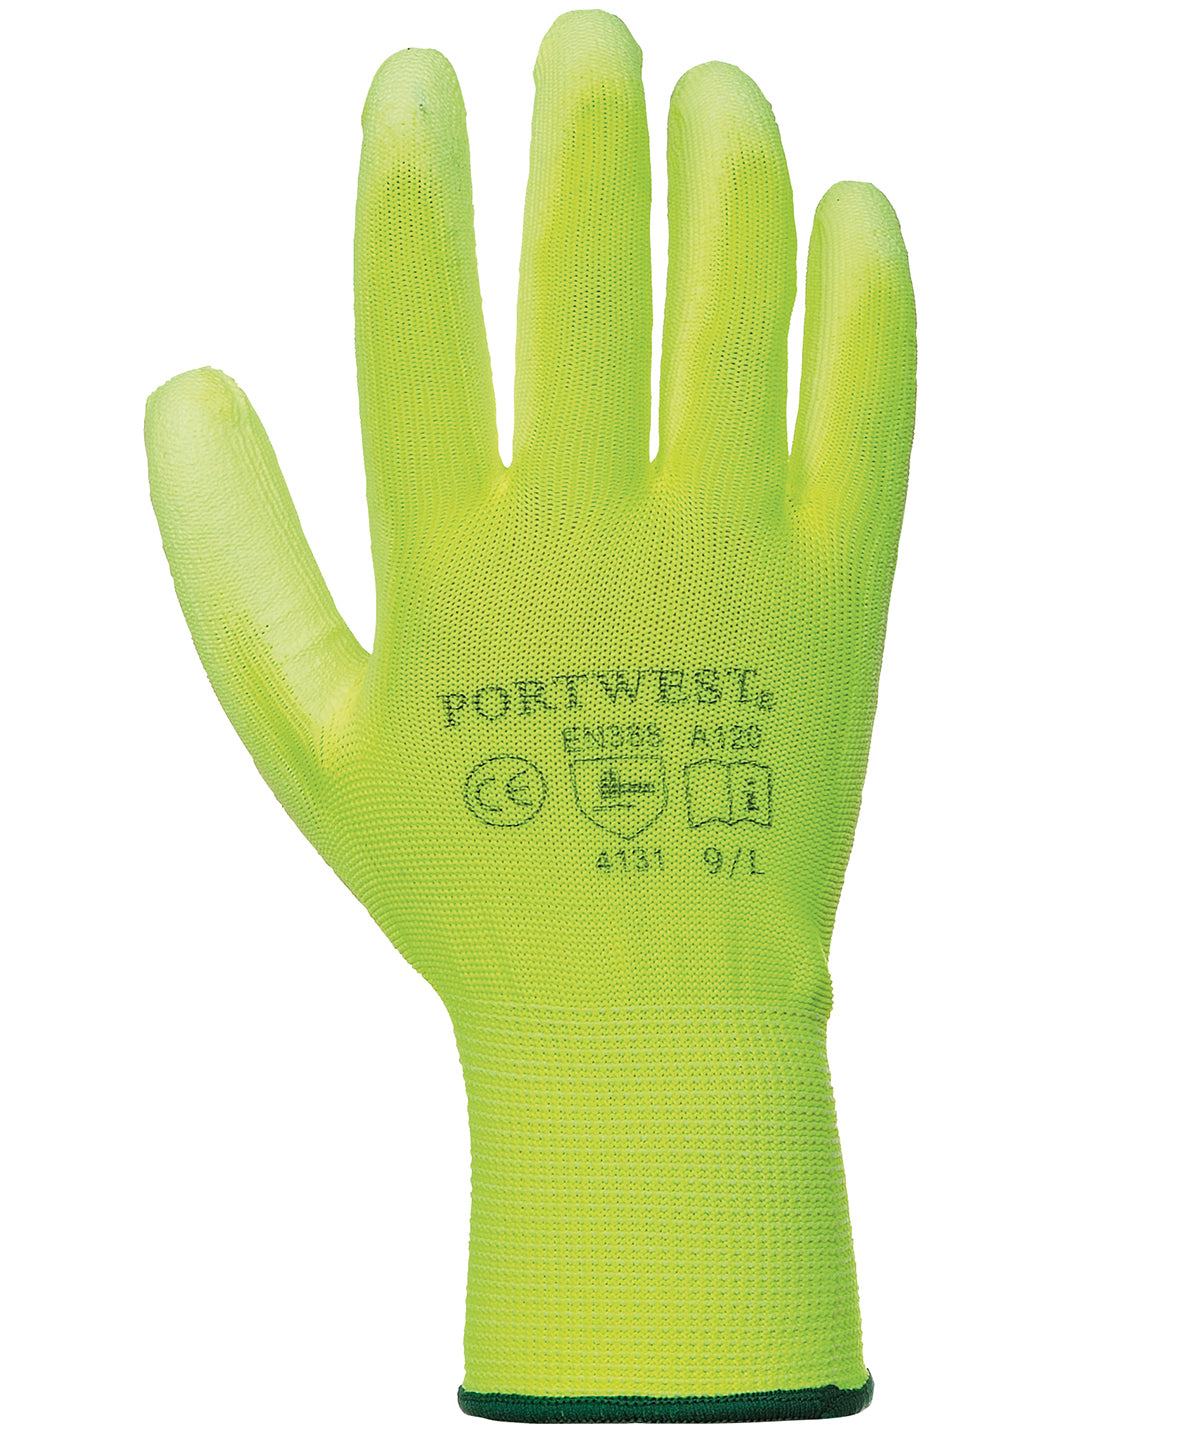 Hanska - PU Palm Glove (A120)